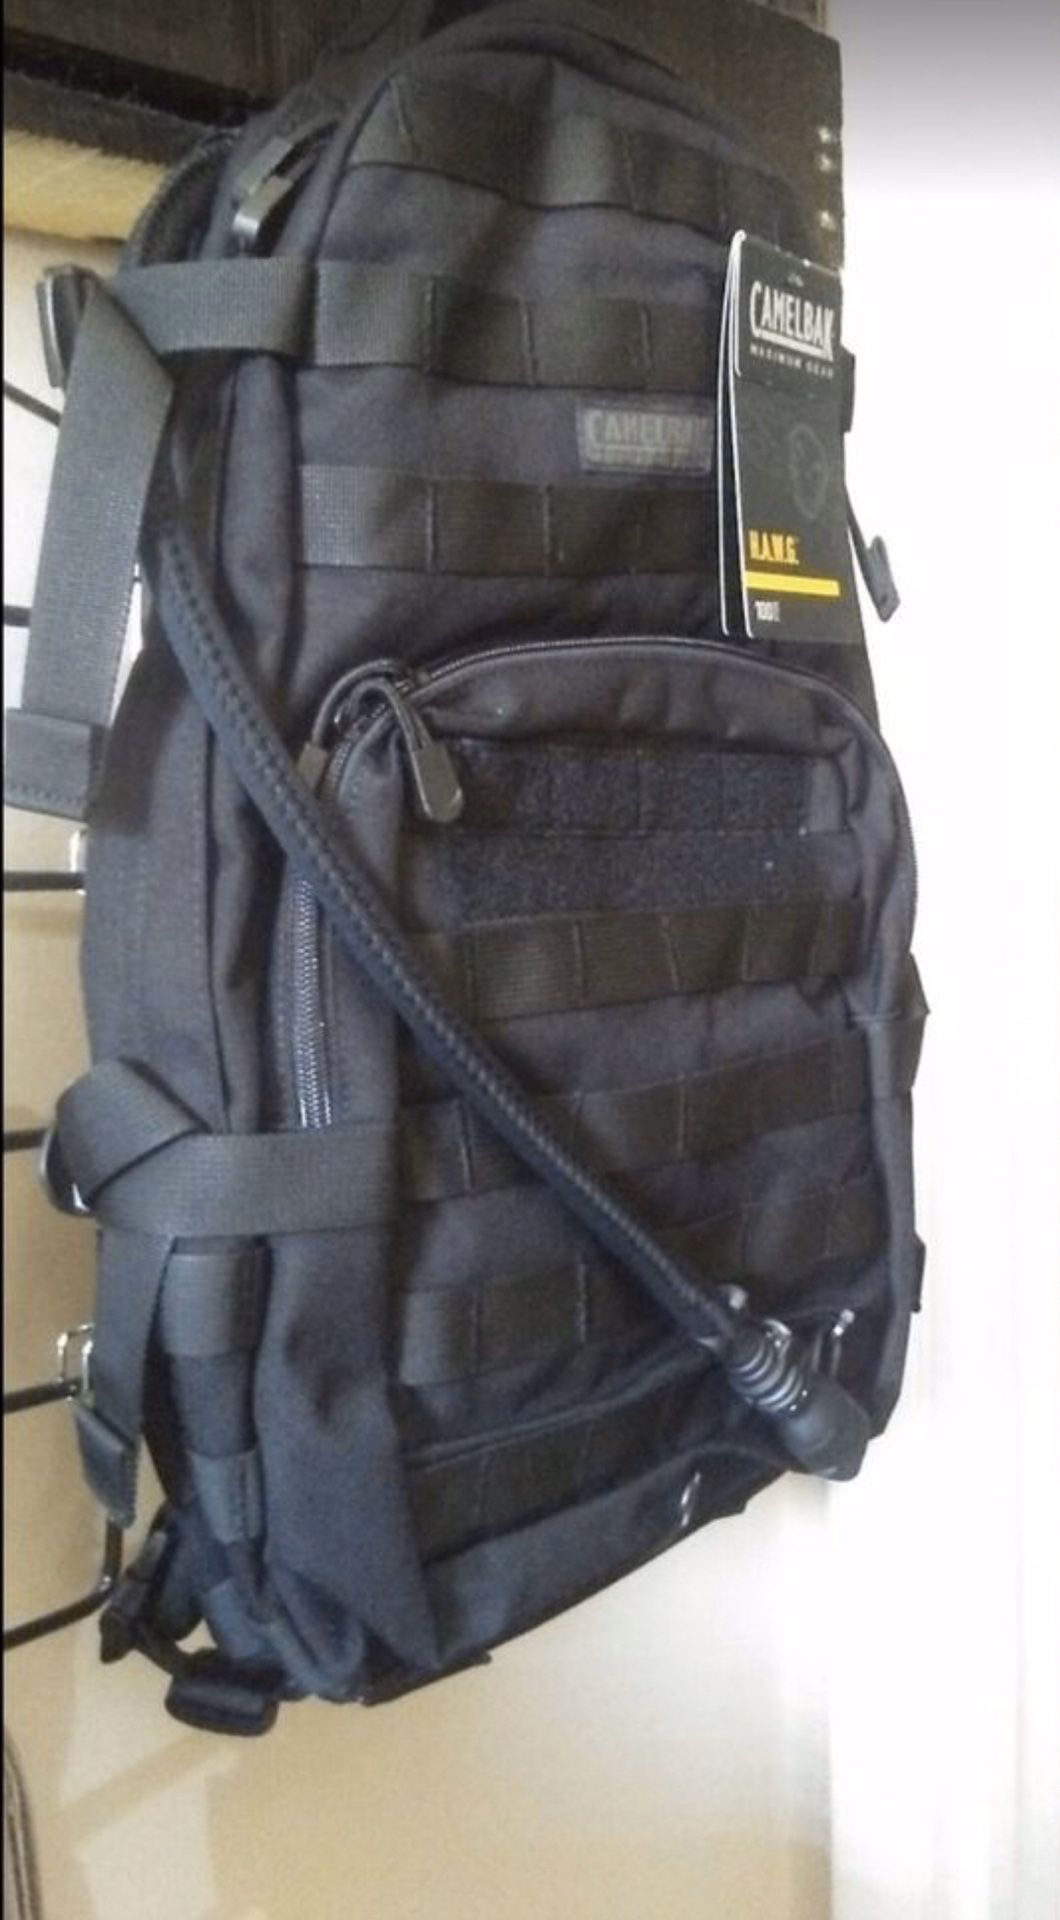 Camelback hydration bag 100oz/3L backpack